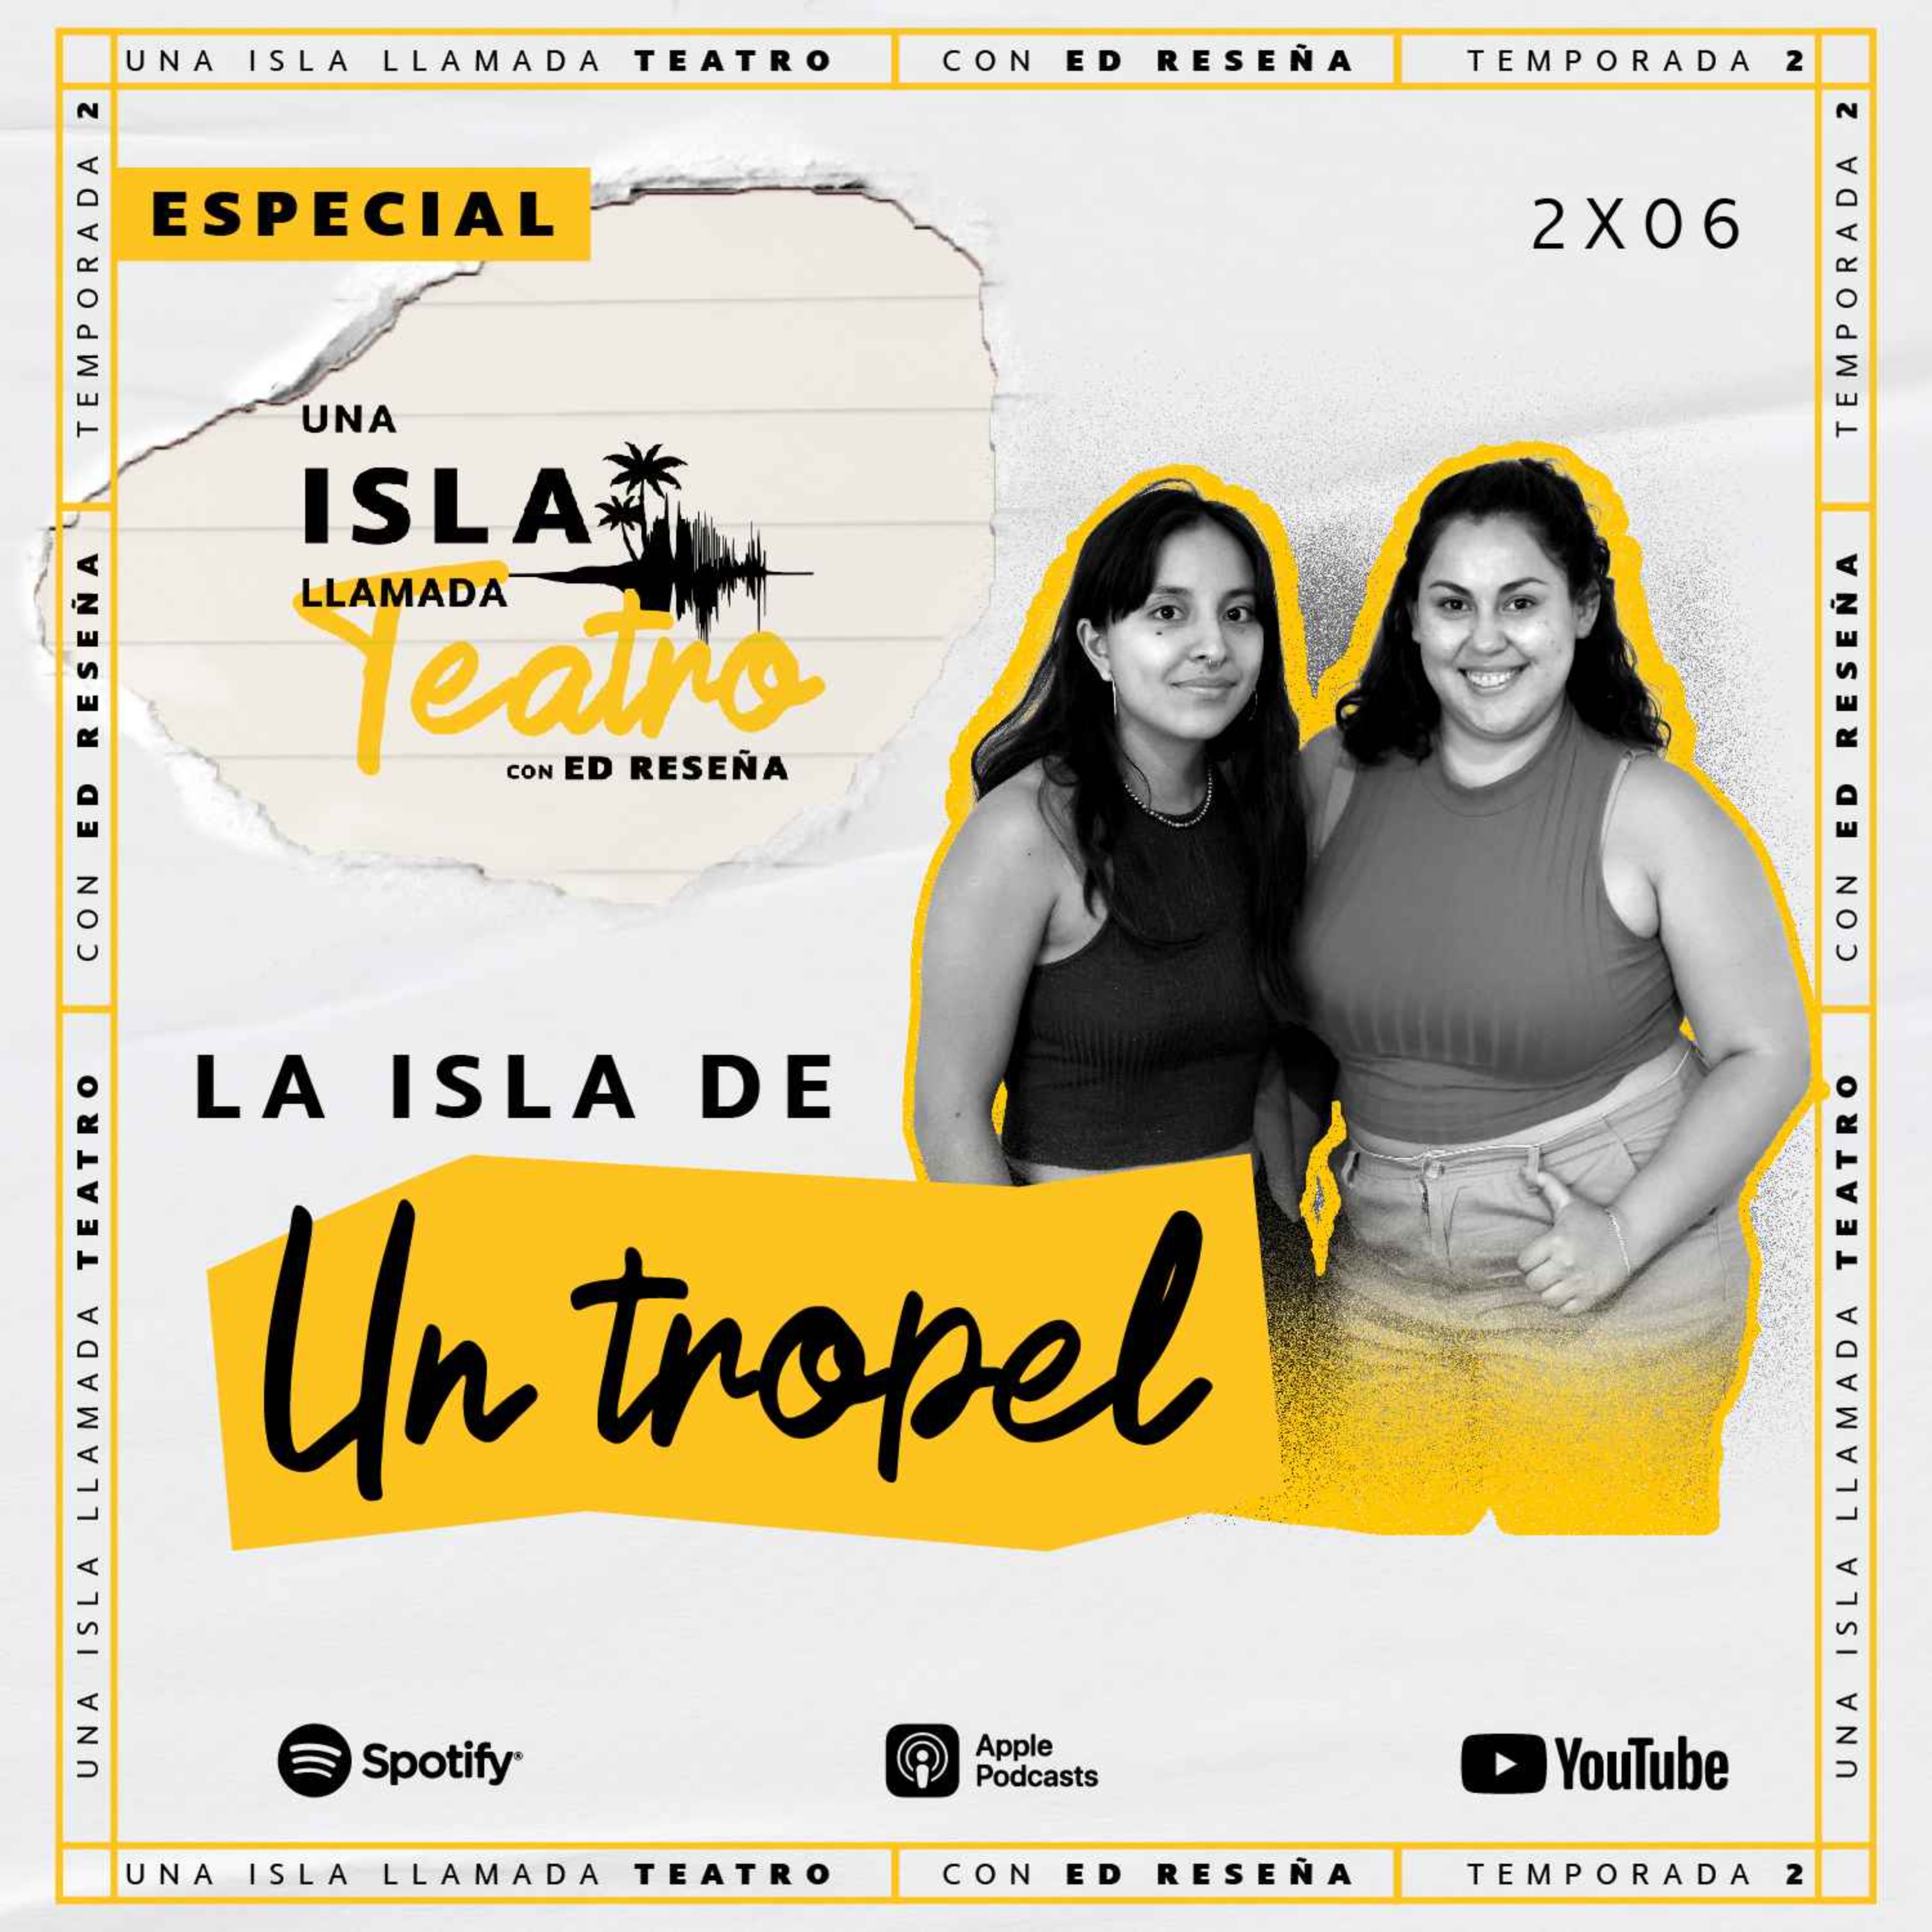 Especial-La Isla de Un Tropel con Arantza Durand y Emma Malacara 2x06